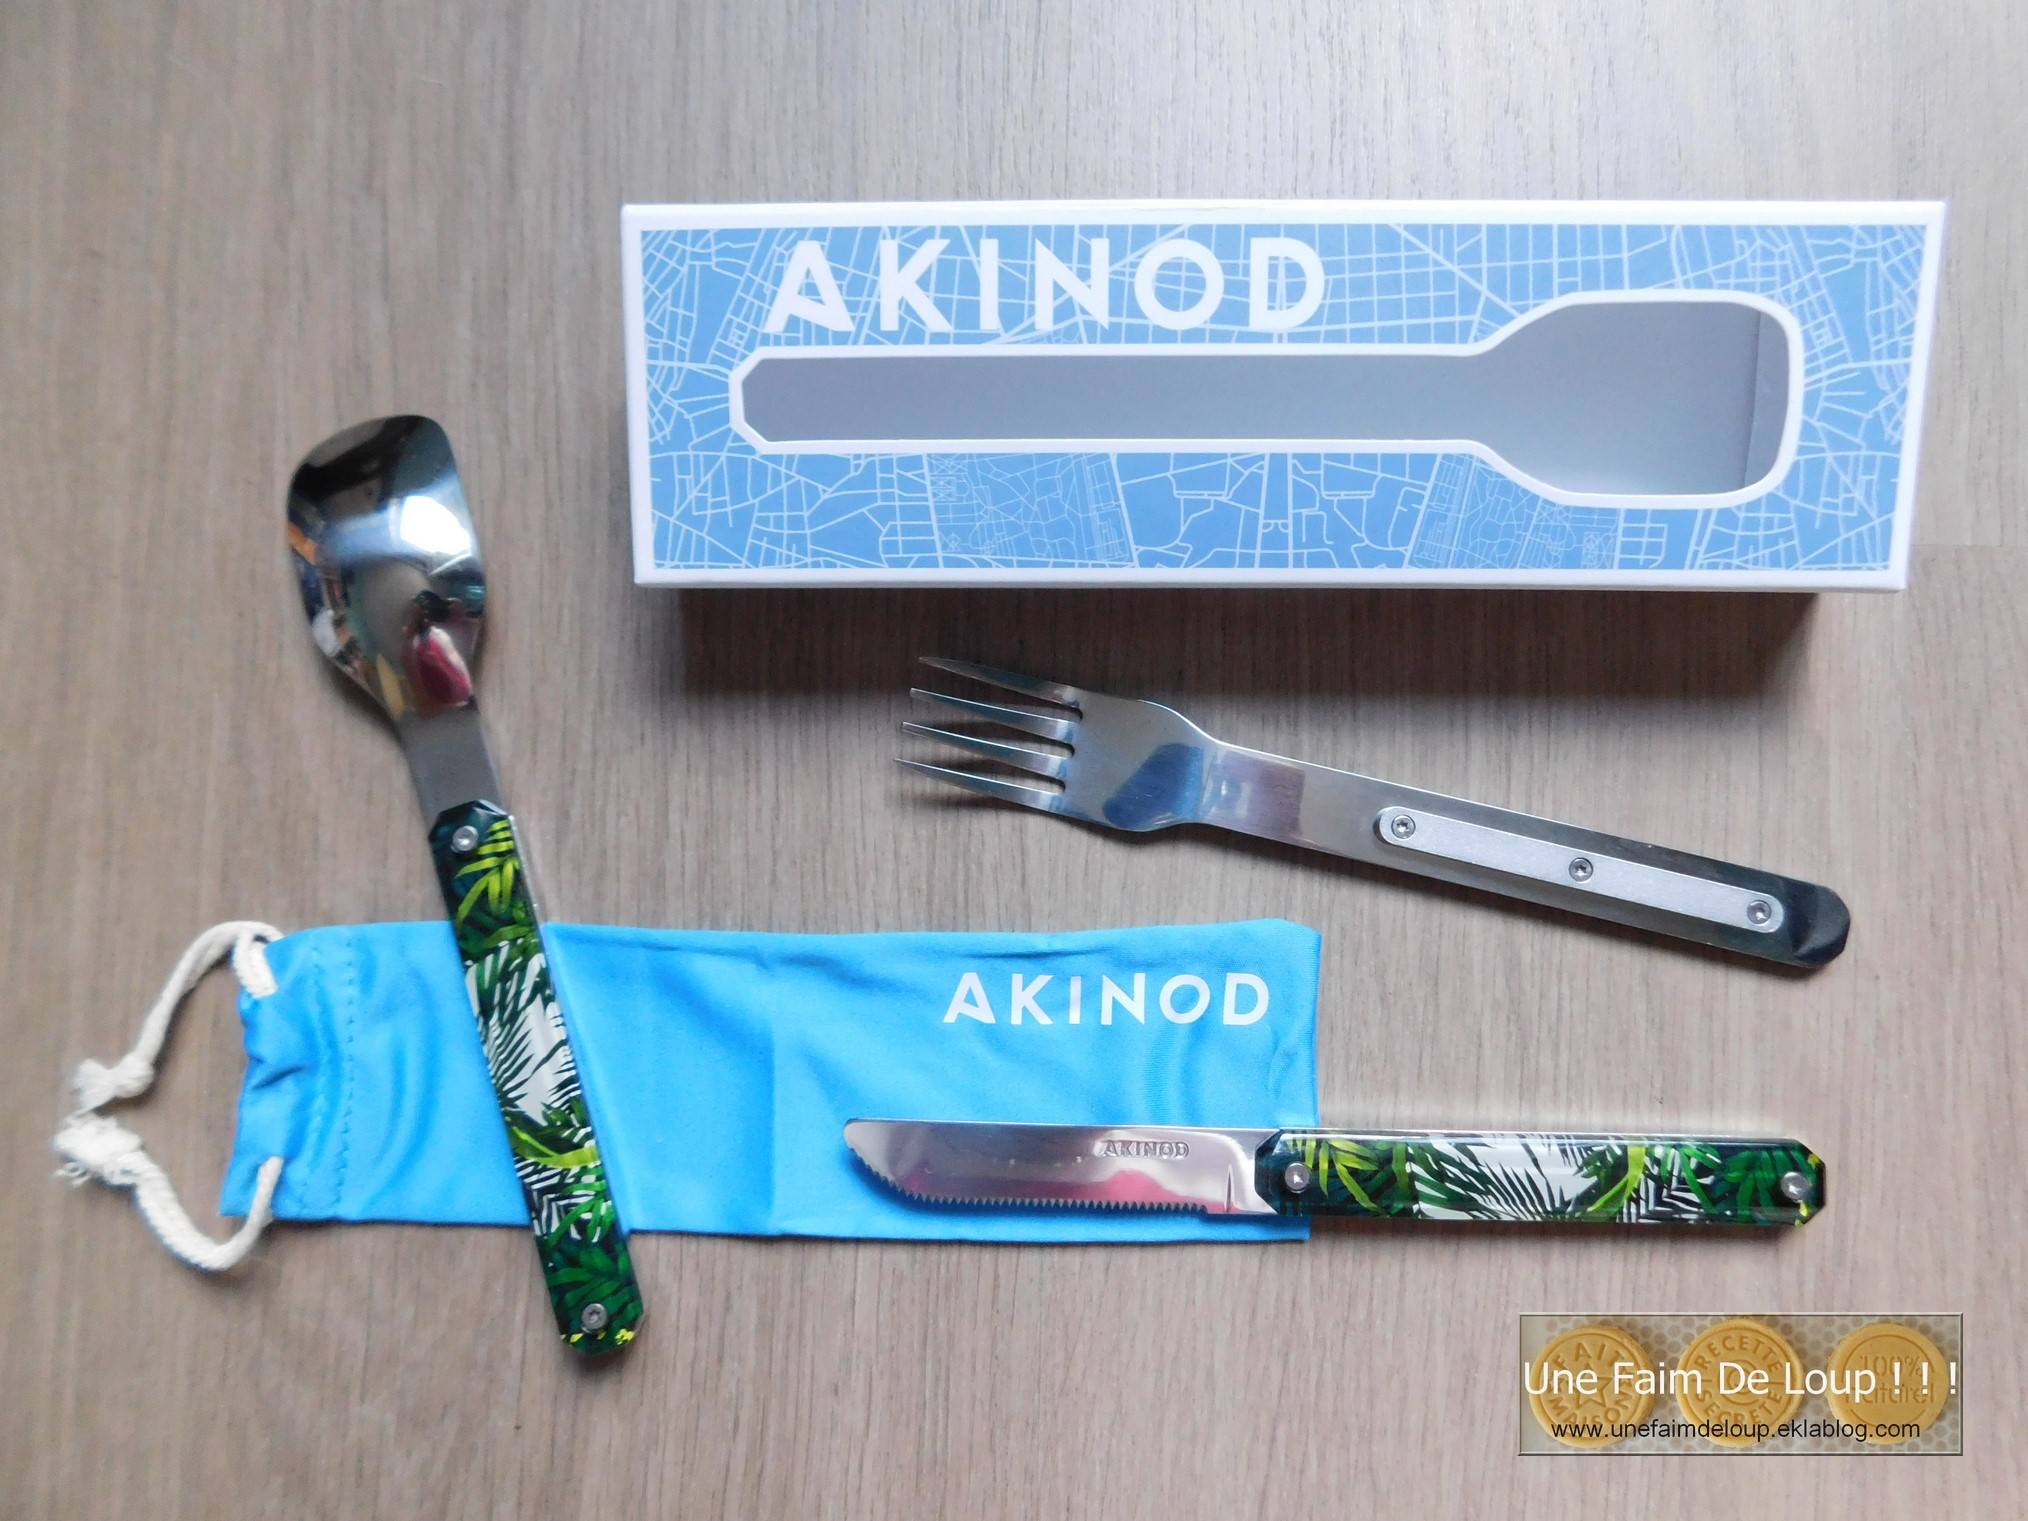 Mon nouveau partenariat : Akinod - Une Faim De Loup ! ! !